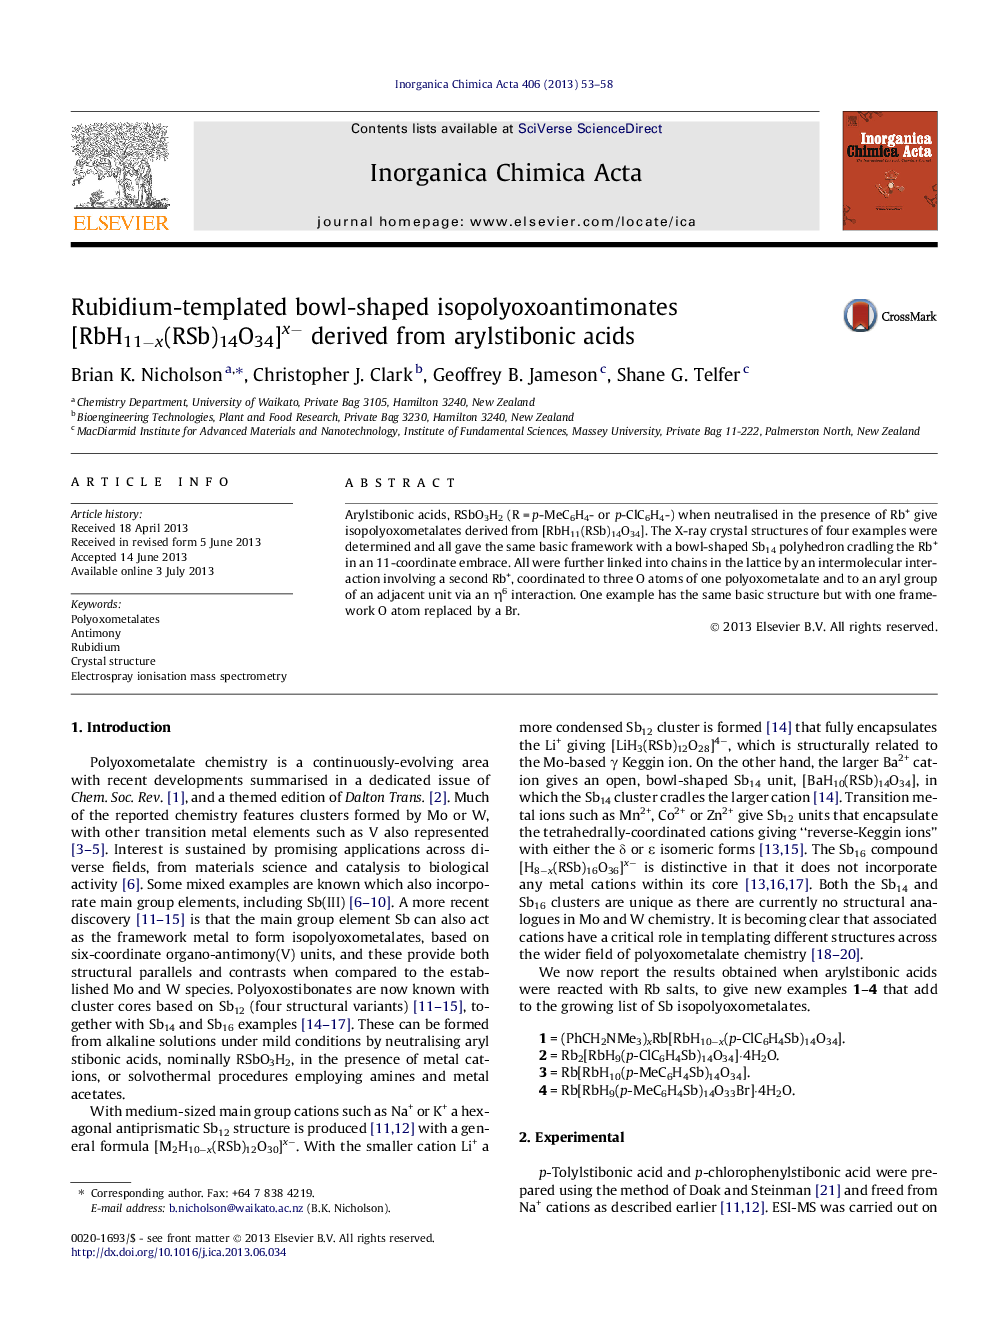 Rubidium-templated bowl-shaped isopolyoxoantimonates [RbH11âx(RSb)14O34]xâ derived from arylstibonic acids